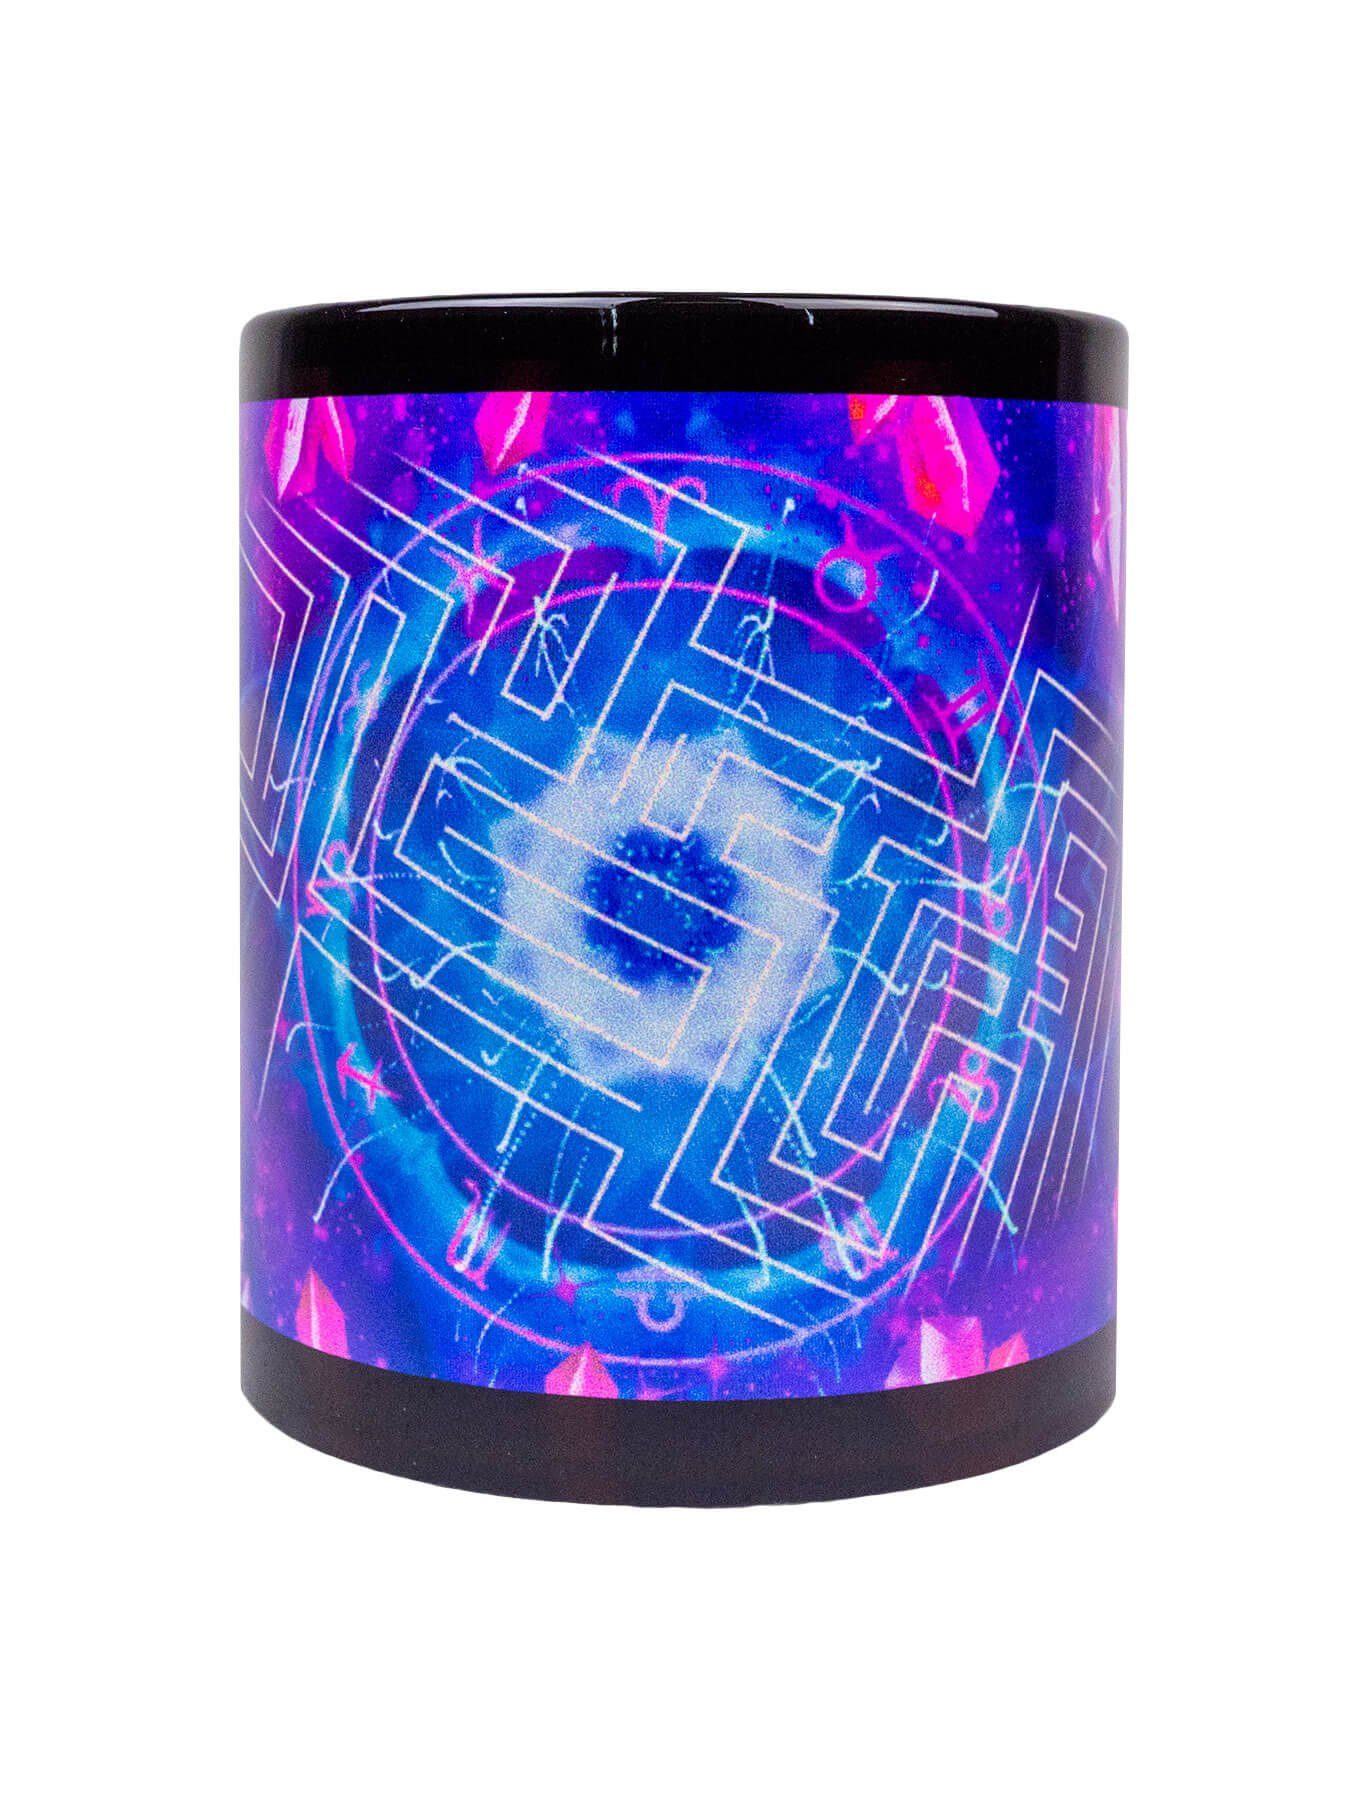 Fluo Motiv Tasse Lines", "Zodiac unter Keramik, leuchtet Signs PSYWORK Cup Tasse Schwarzlicht Neon UV-aktiv,